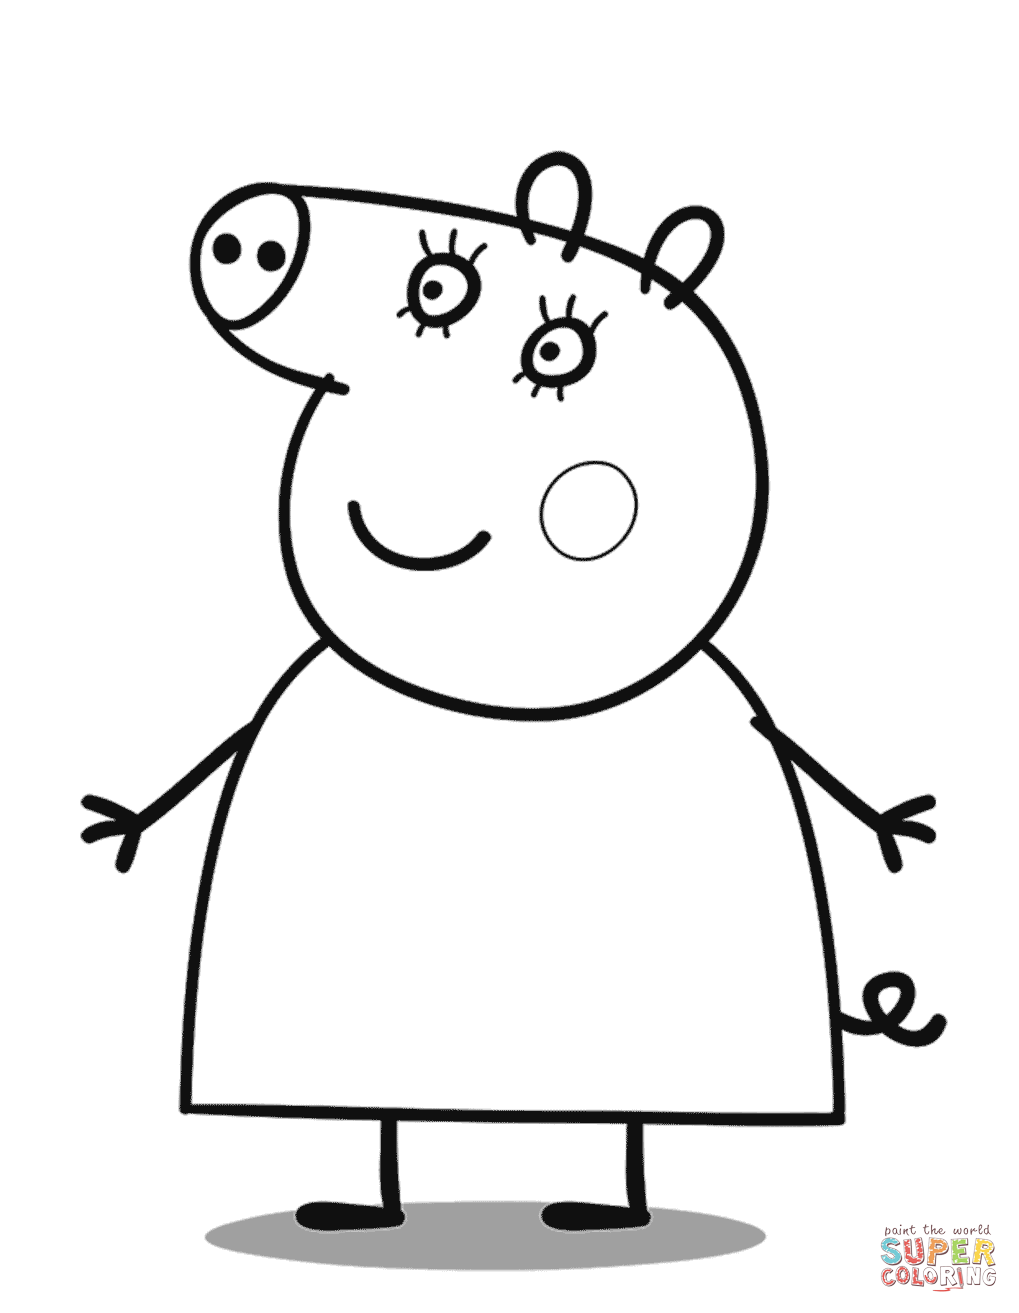 Mamá Cerdita de Peppa Pig: 10 dibujos para el Día de la Madre bonitos que puedes colorear y regalar